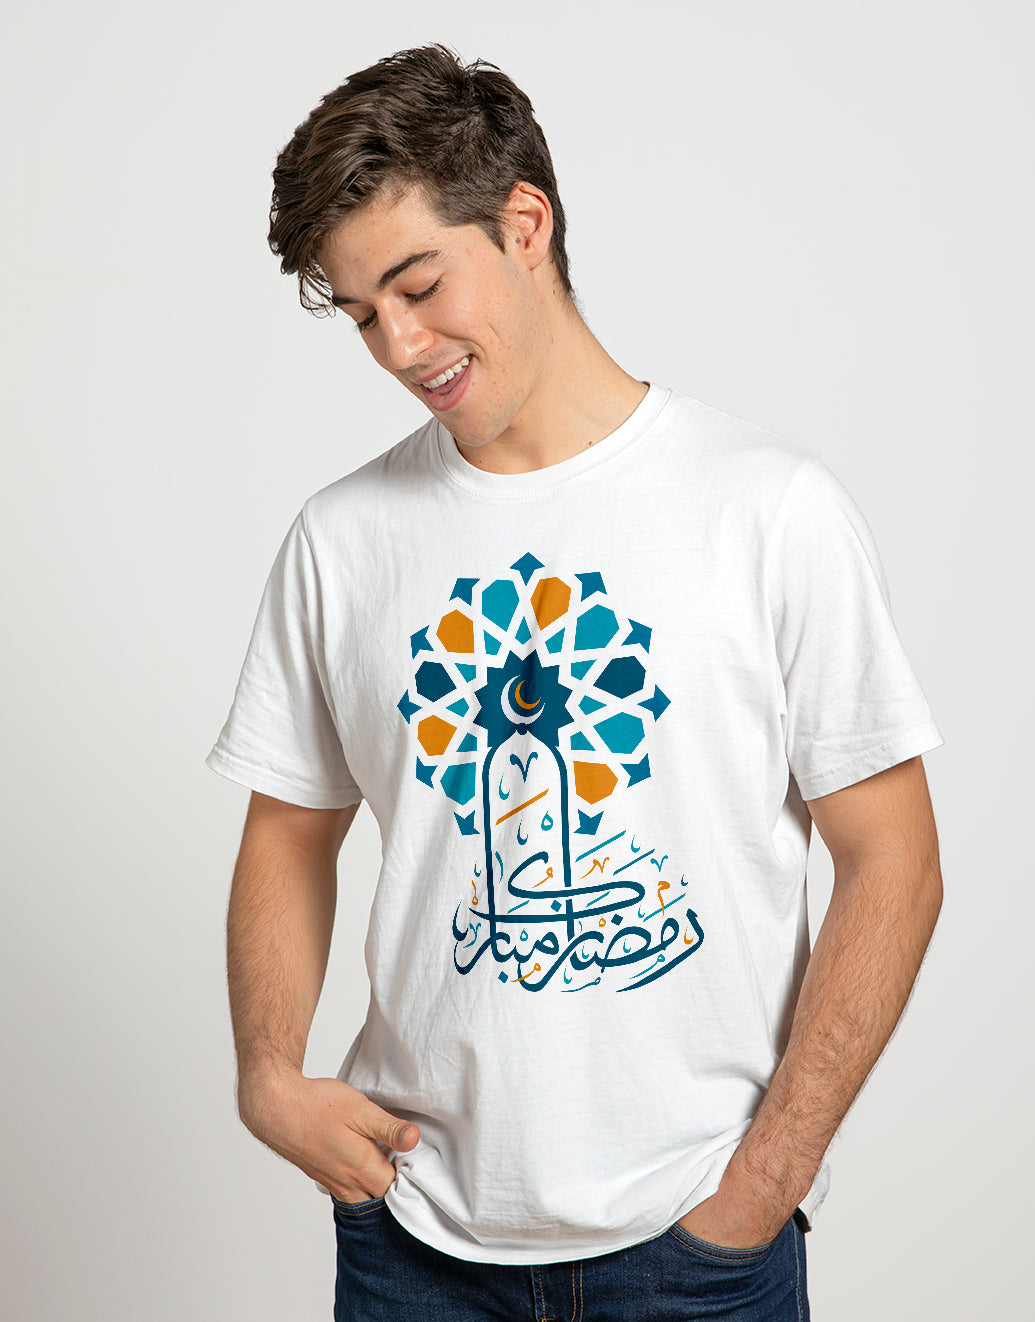 Men's T-shirt (Ramadan Kareem with decorations)